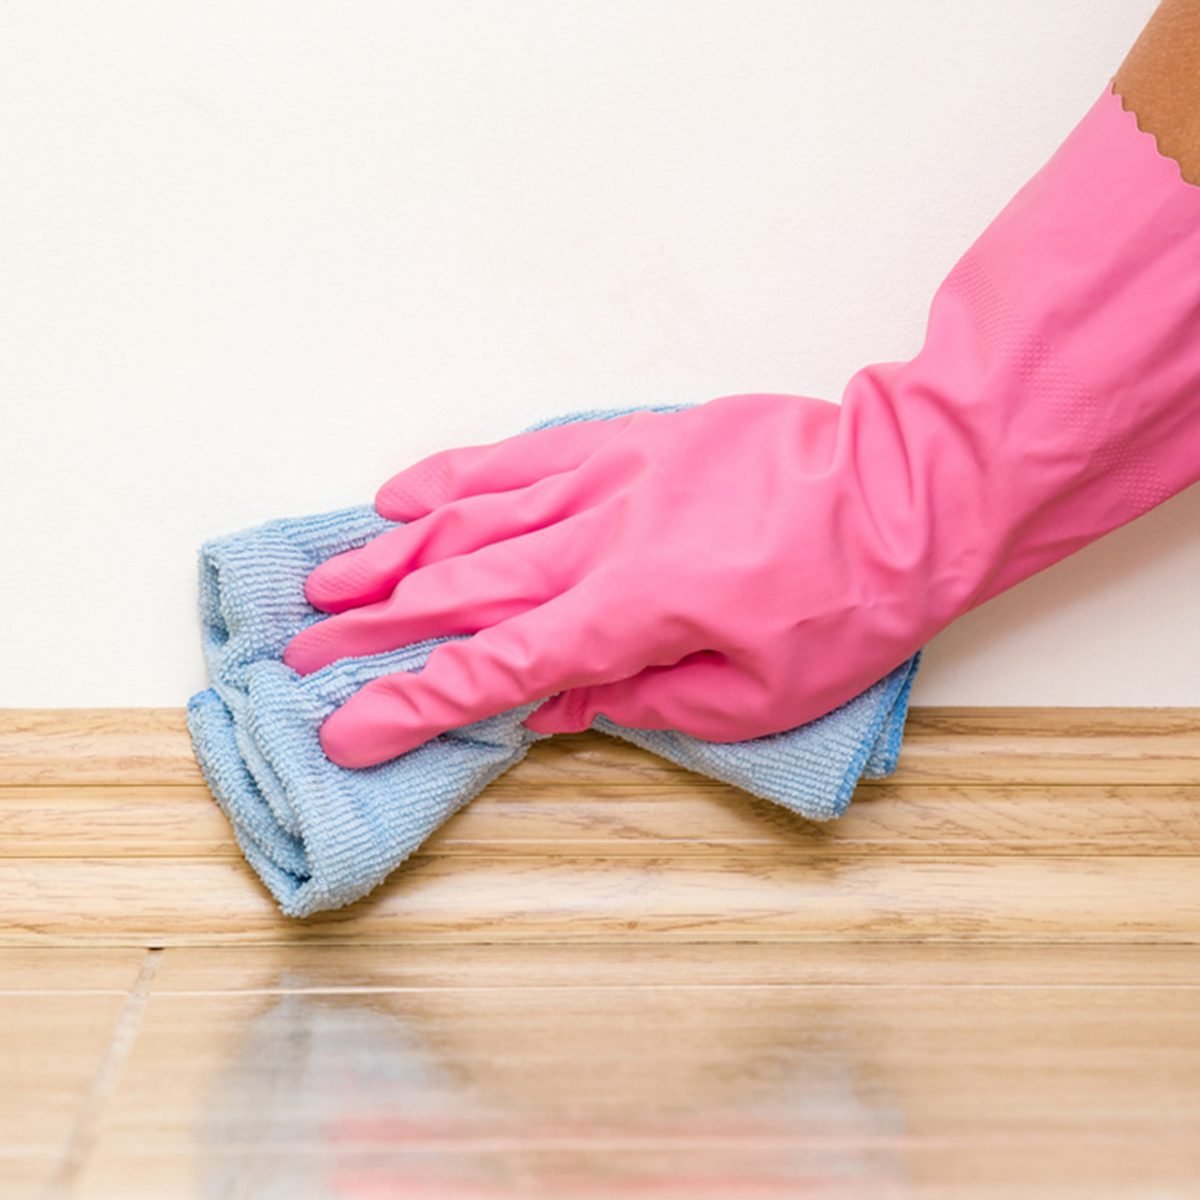 在橡胶防护手套清洁脚板在地板上的灰尘和超细纤维抹布在墙上。早期的春季大扫除或定期清理。女仆打扫房子。伤风ID 664596868